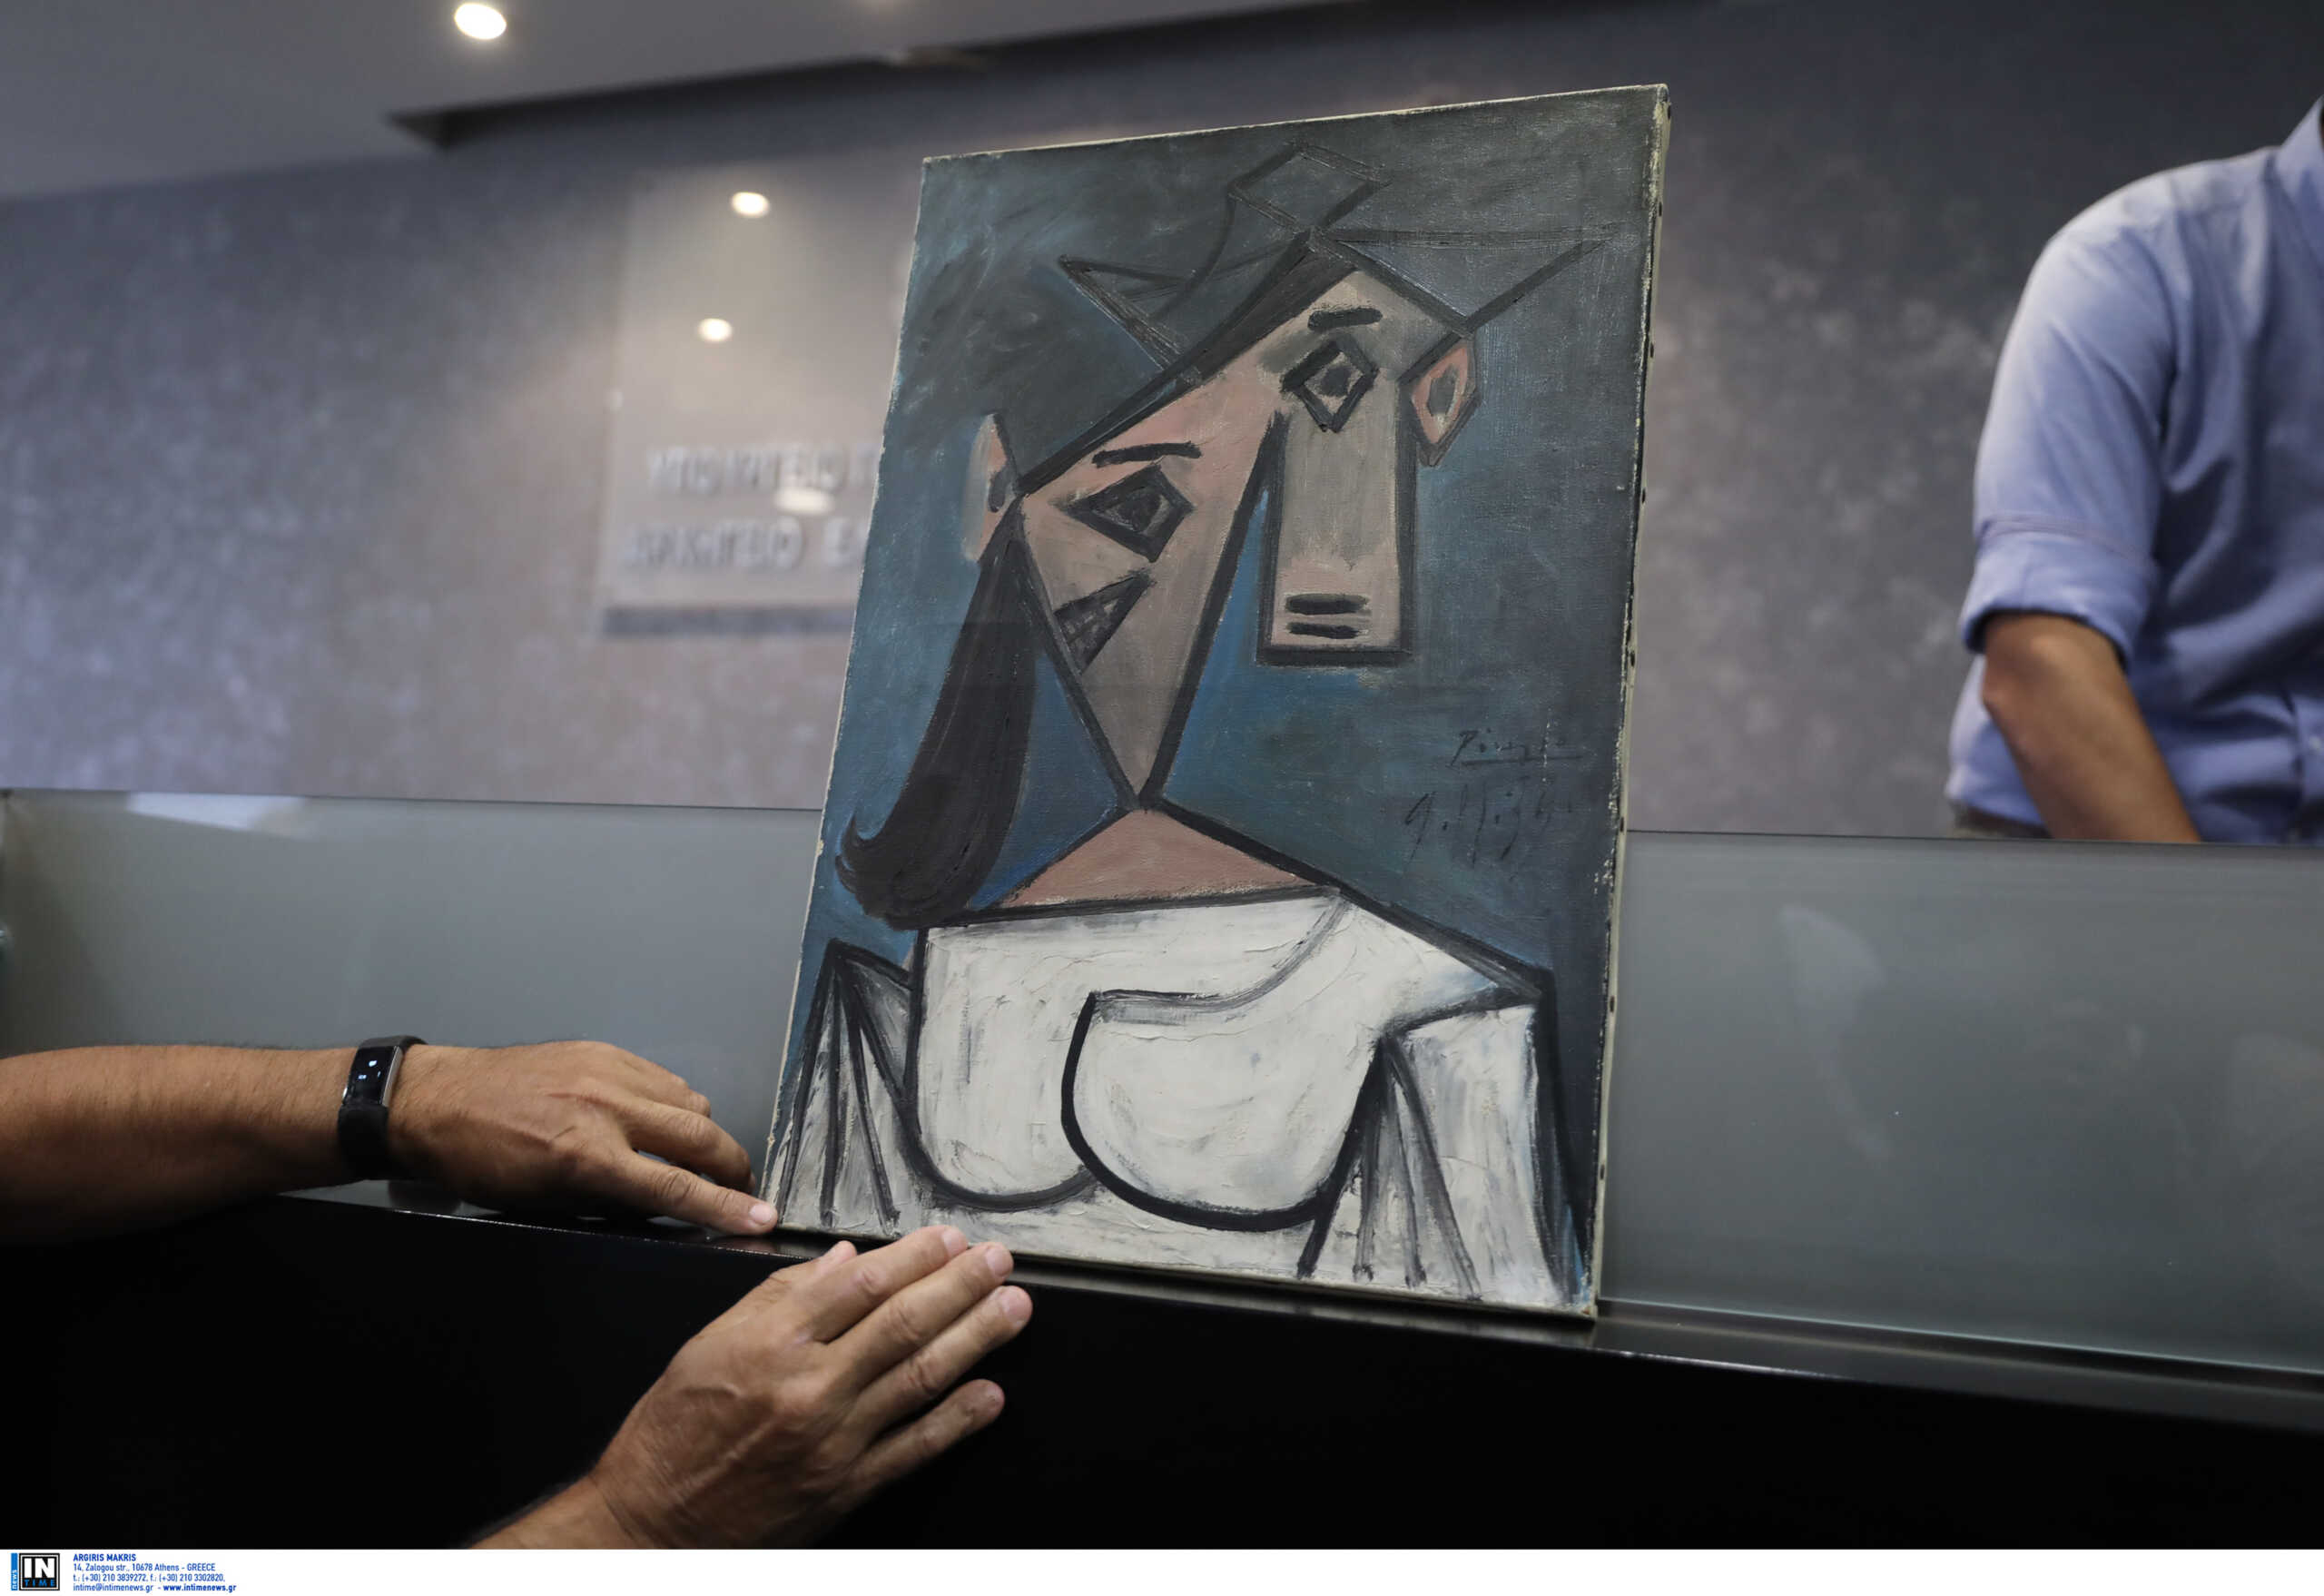 Εθνική Πινακοθήκη: «Η κλοπή θα μπορούσε να γίνει από κάθε απλό πολίτη» λέει ο κλέφτης του Πικάσο